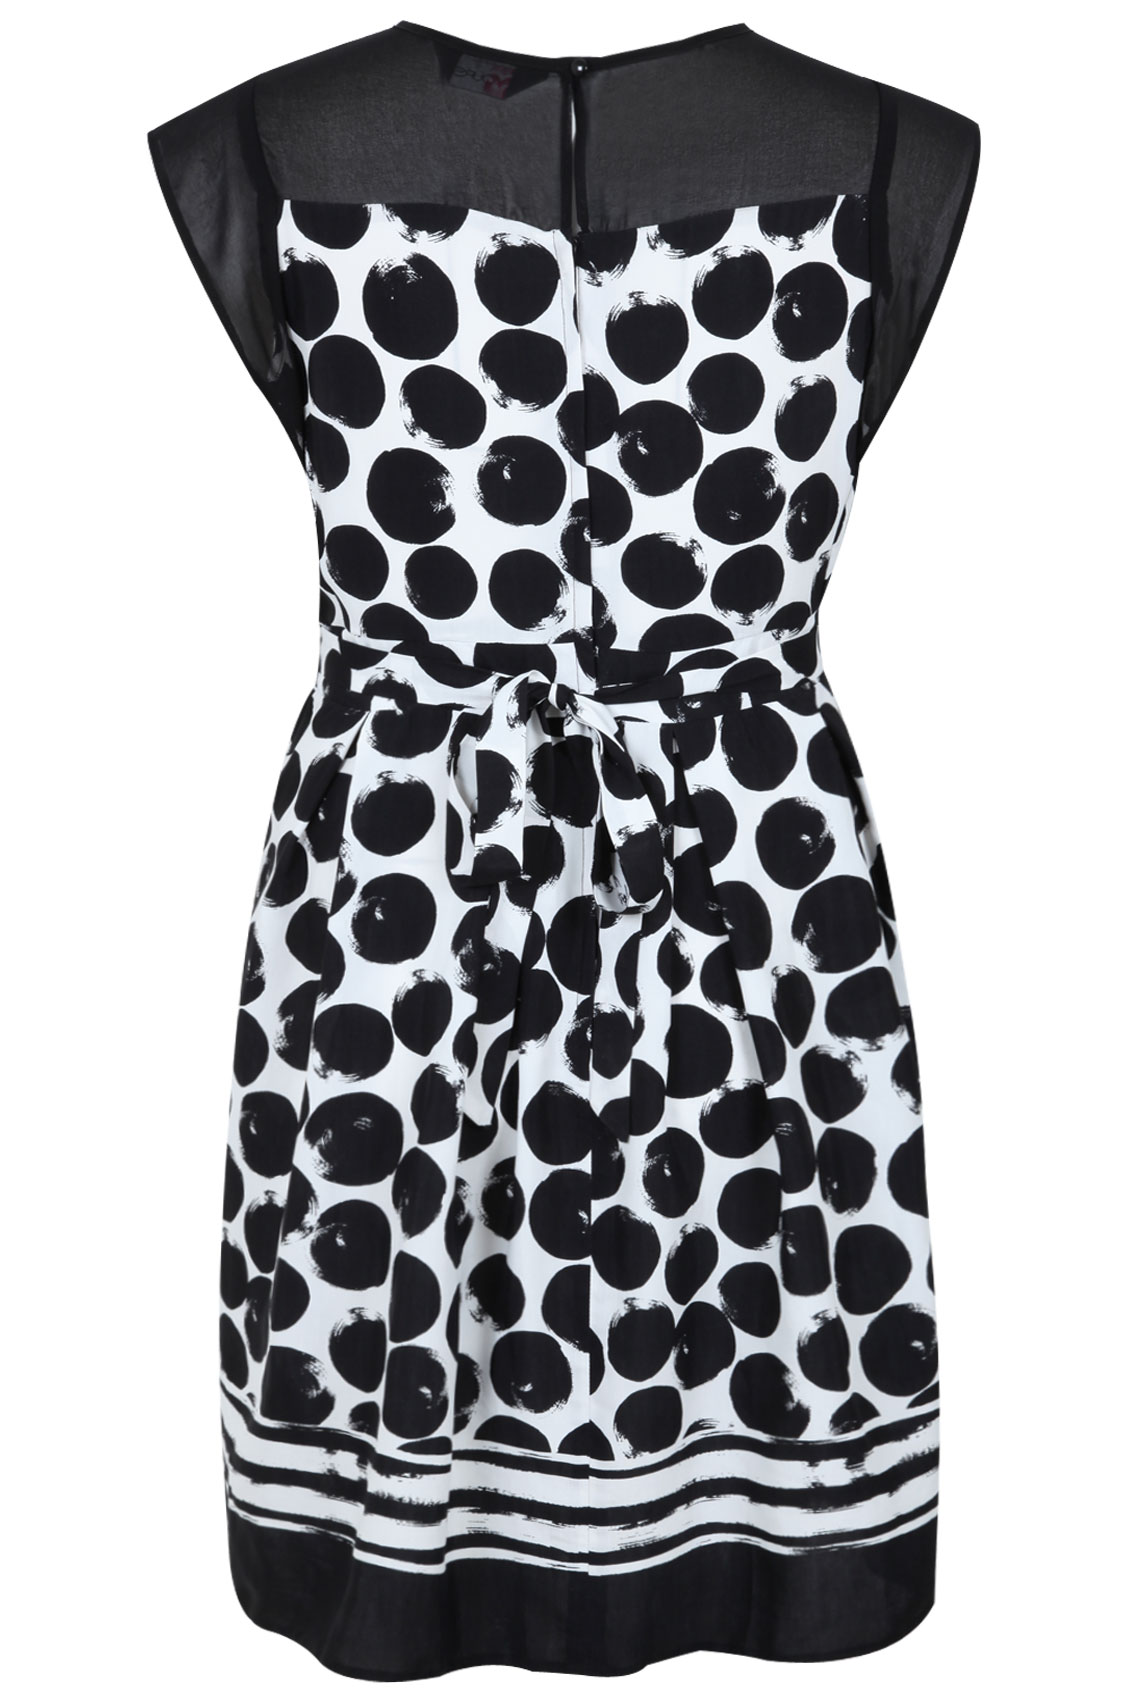 Black & White Spot Print Dress With Sheer Yoke plus size 16,18,20,22,24 ...